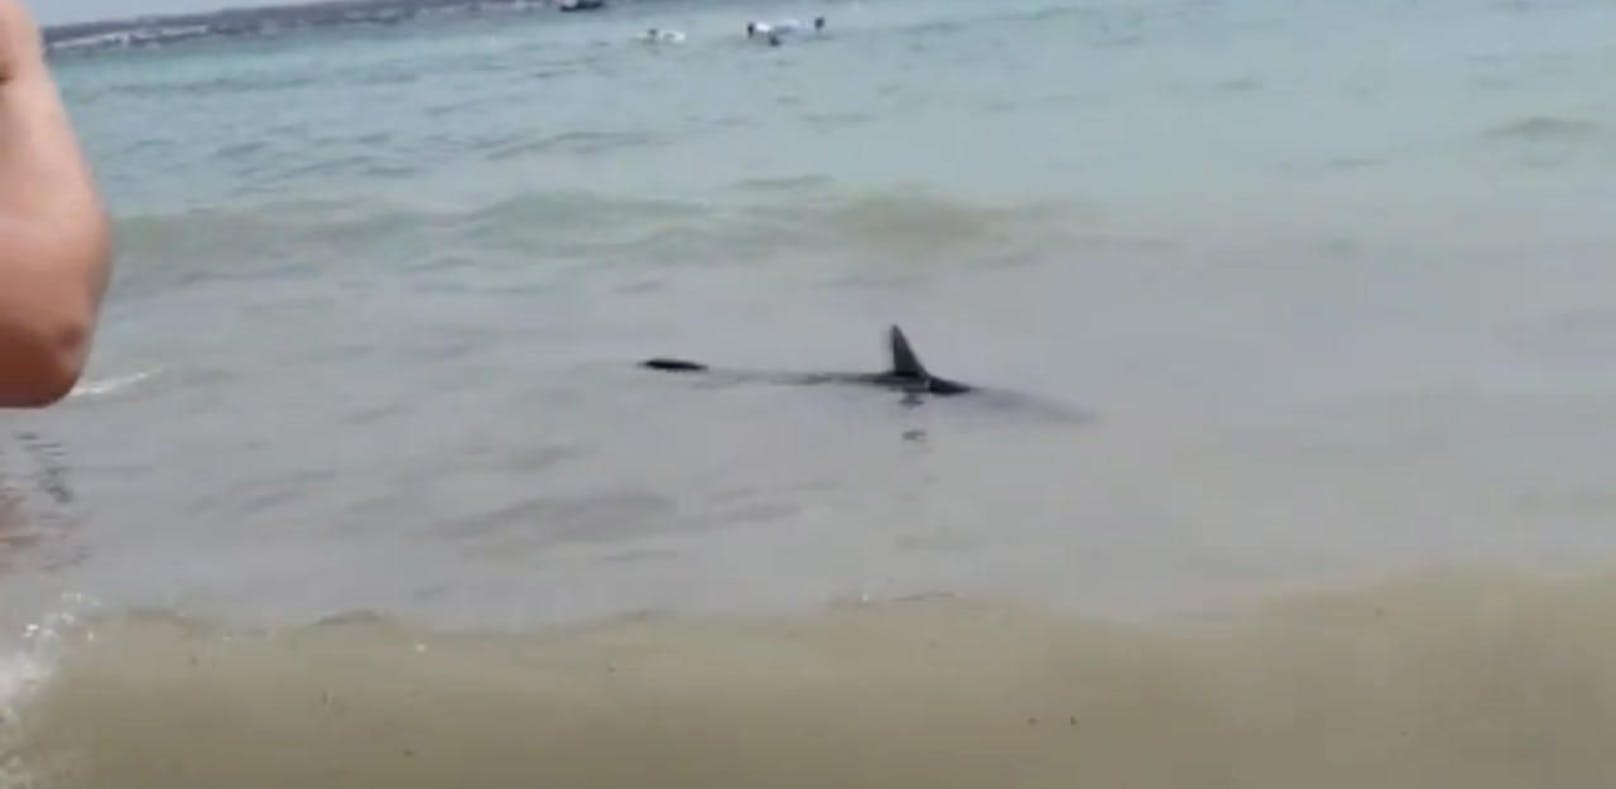 Der etwa zwei bis drei Meter lange Hai attackierte eine österreichische Ägypten-Urlauberin.